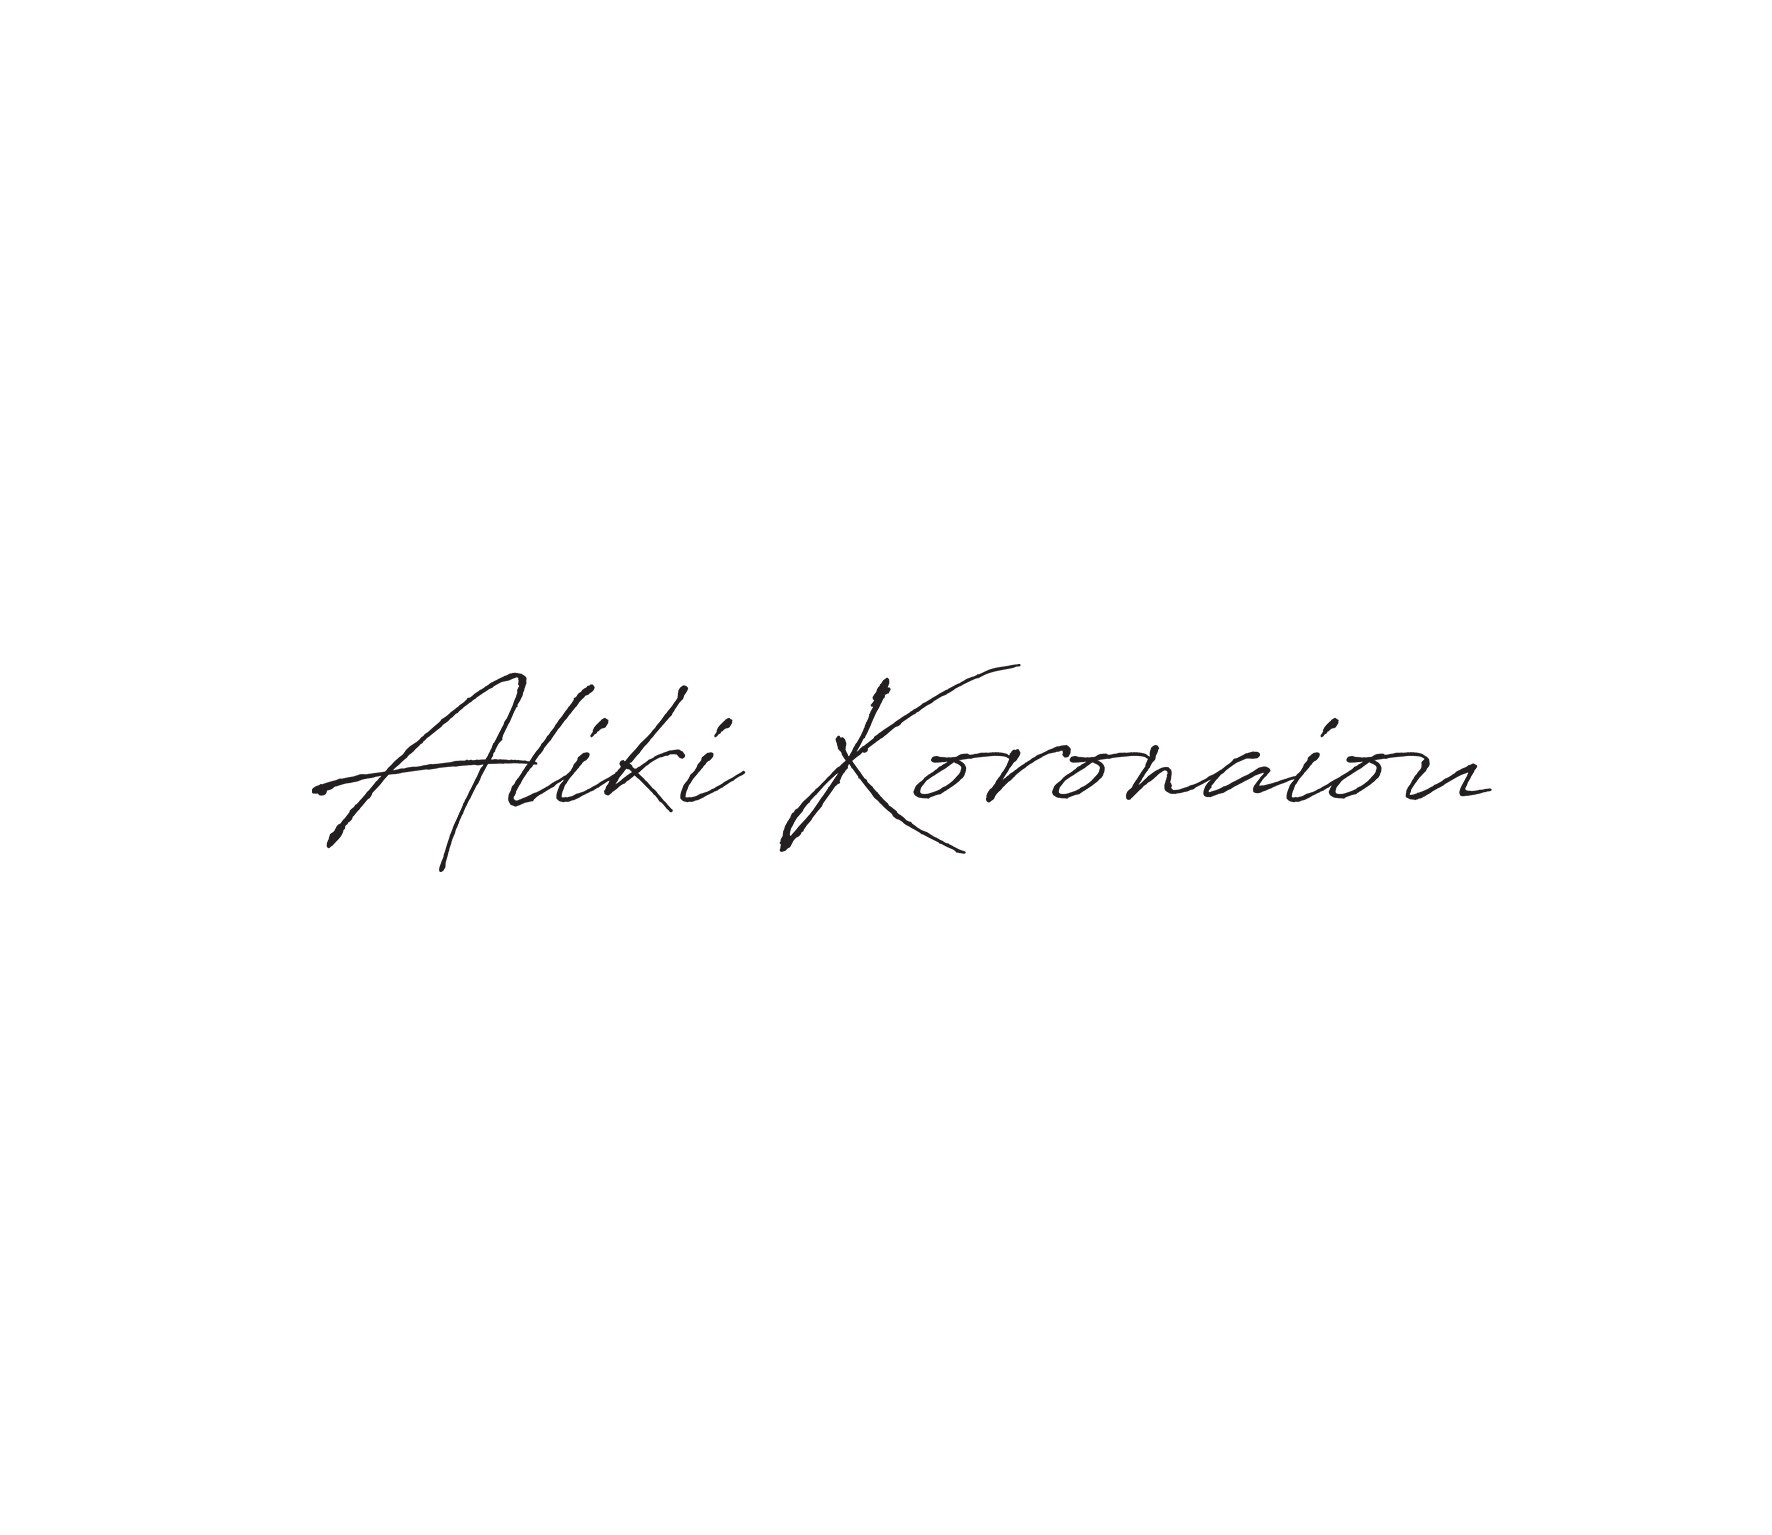 Aliki Koronaiou - Shop